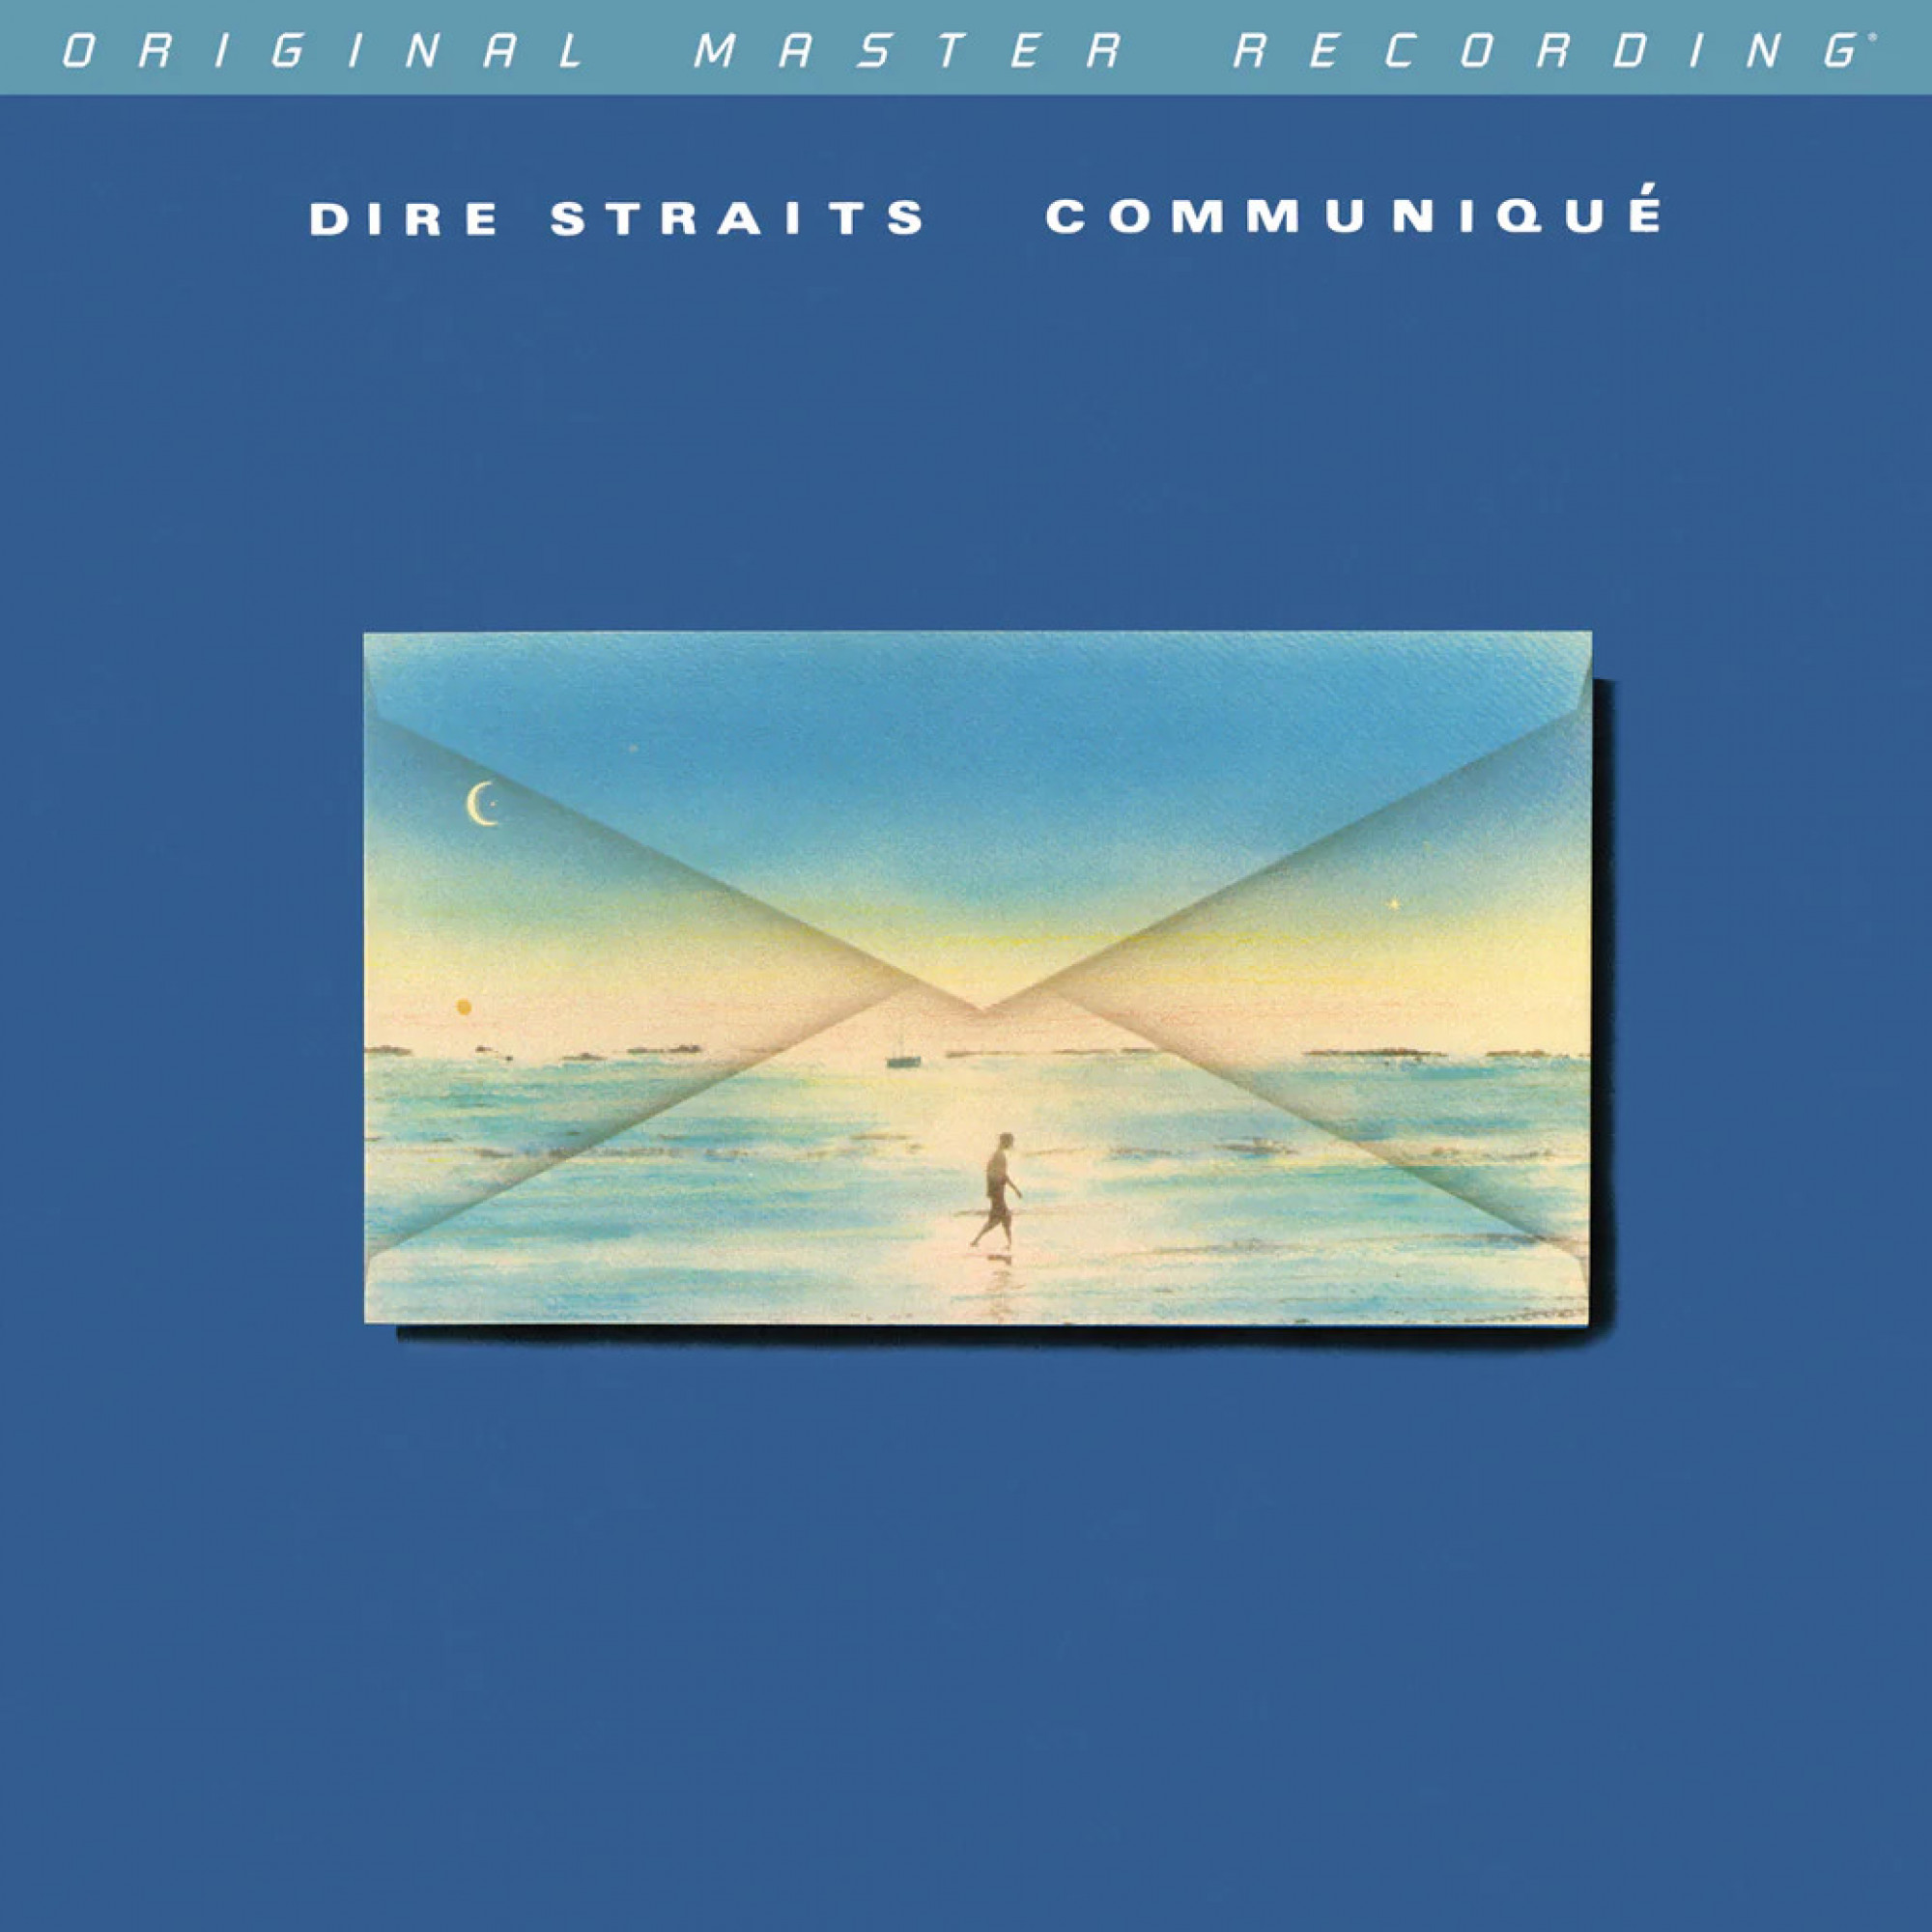 Dire Straits Vinyl Records for sale